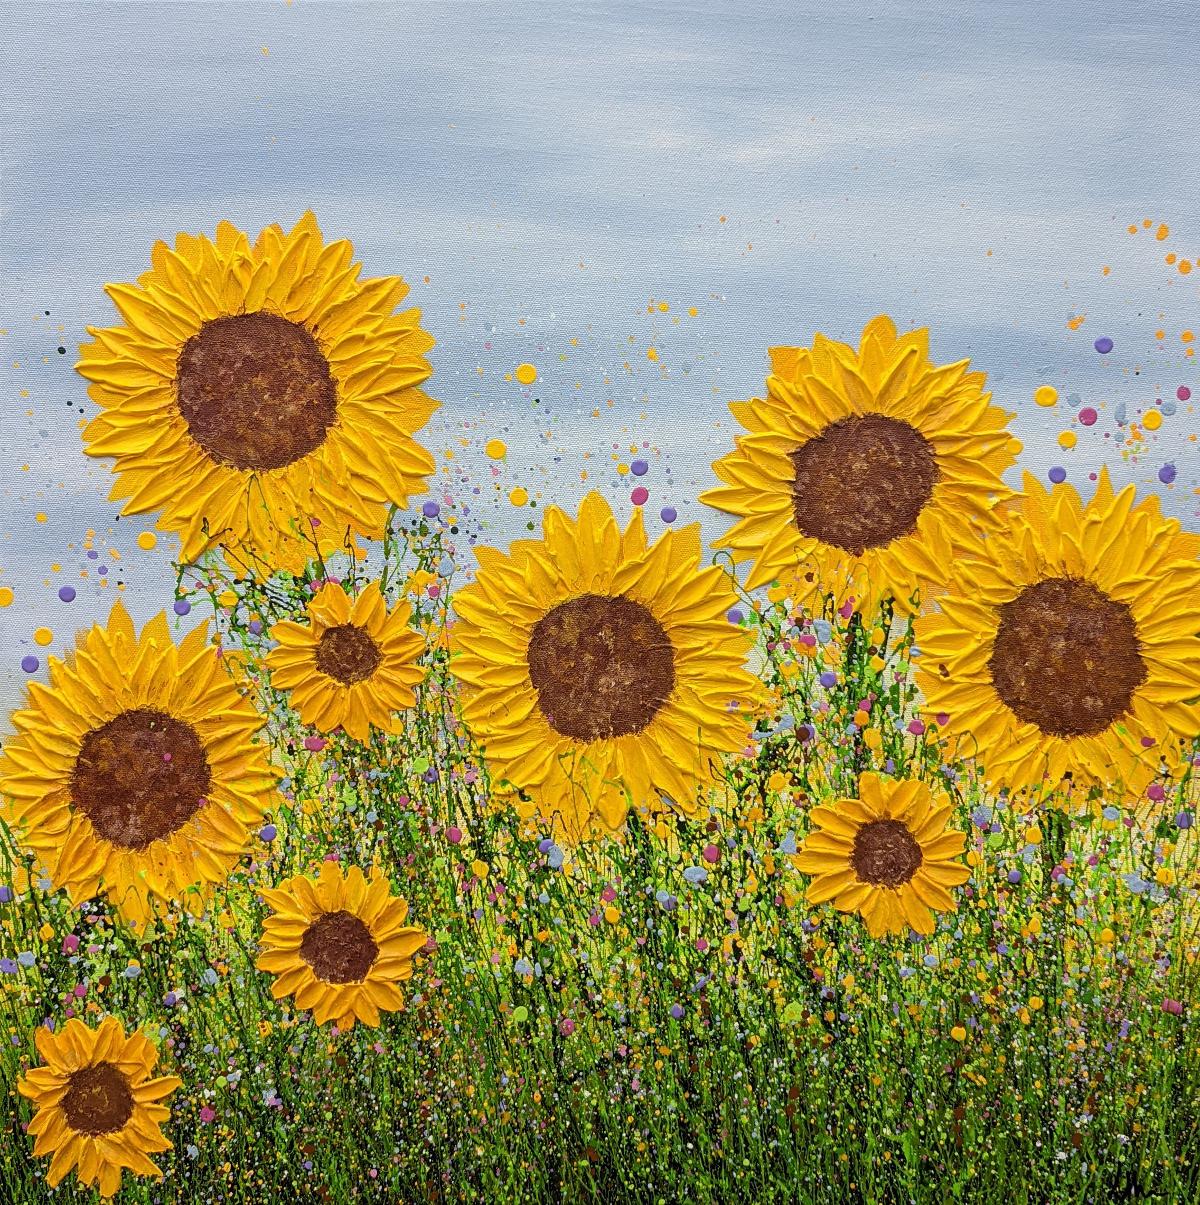 Sag es mit Sonnenblumen - von Lucy Moore [2022]
original und handsigniert vom Künstler 
Acryl auf Leinwand
Bildgröße: H:60 cm x B:60 cm
Gesamtgröße des ungerahmten Werks: H:60 cm x B:60 cm x T:1,5cm
Ungerahmt verkauft
Bitte beachten Sie, dass die